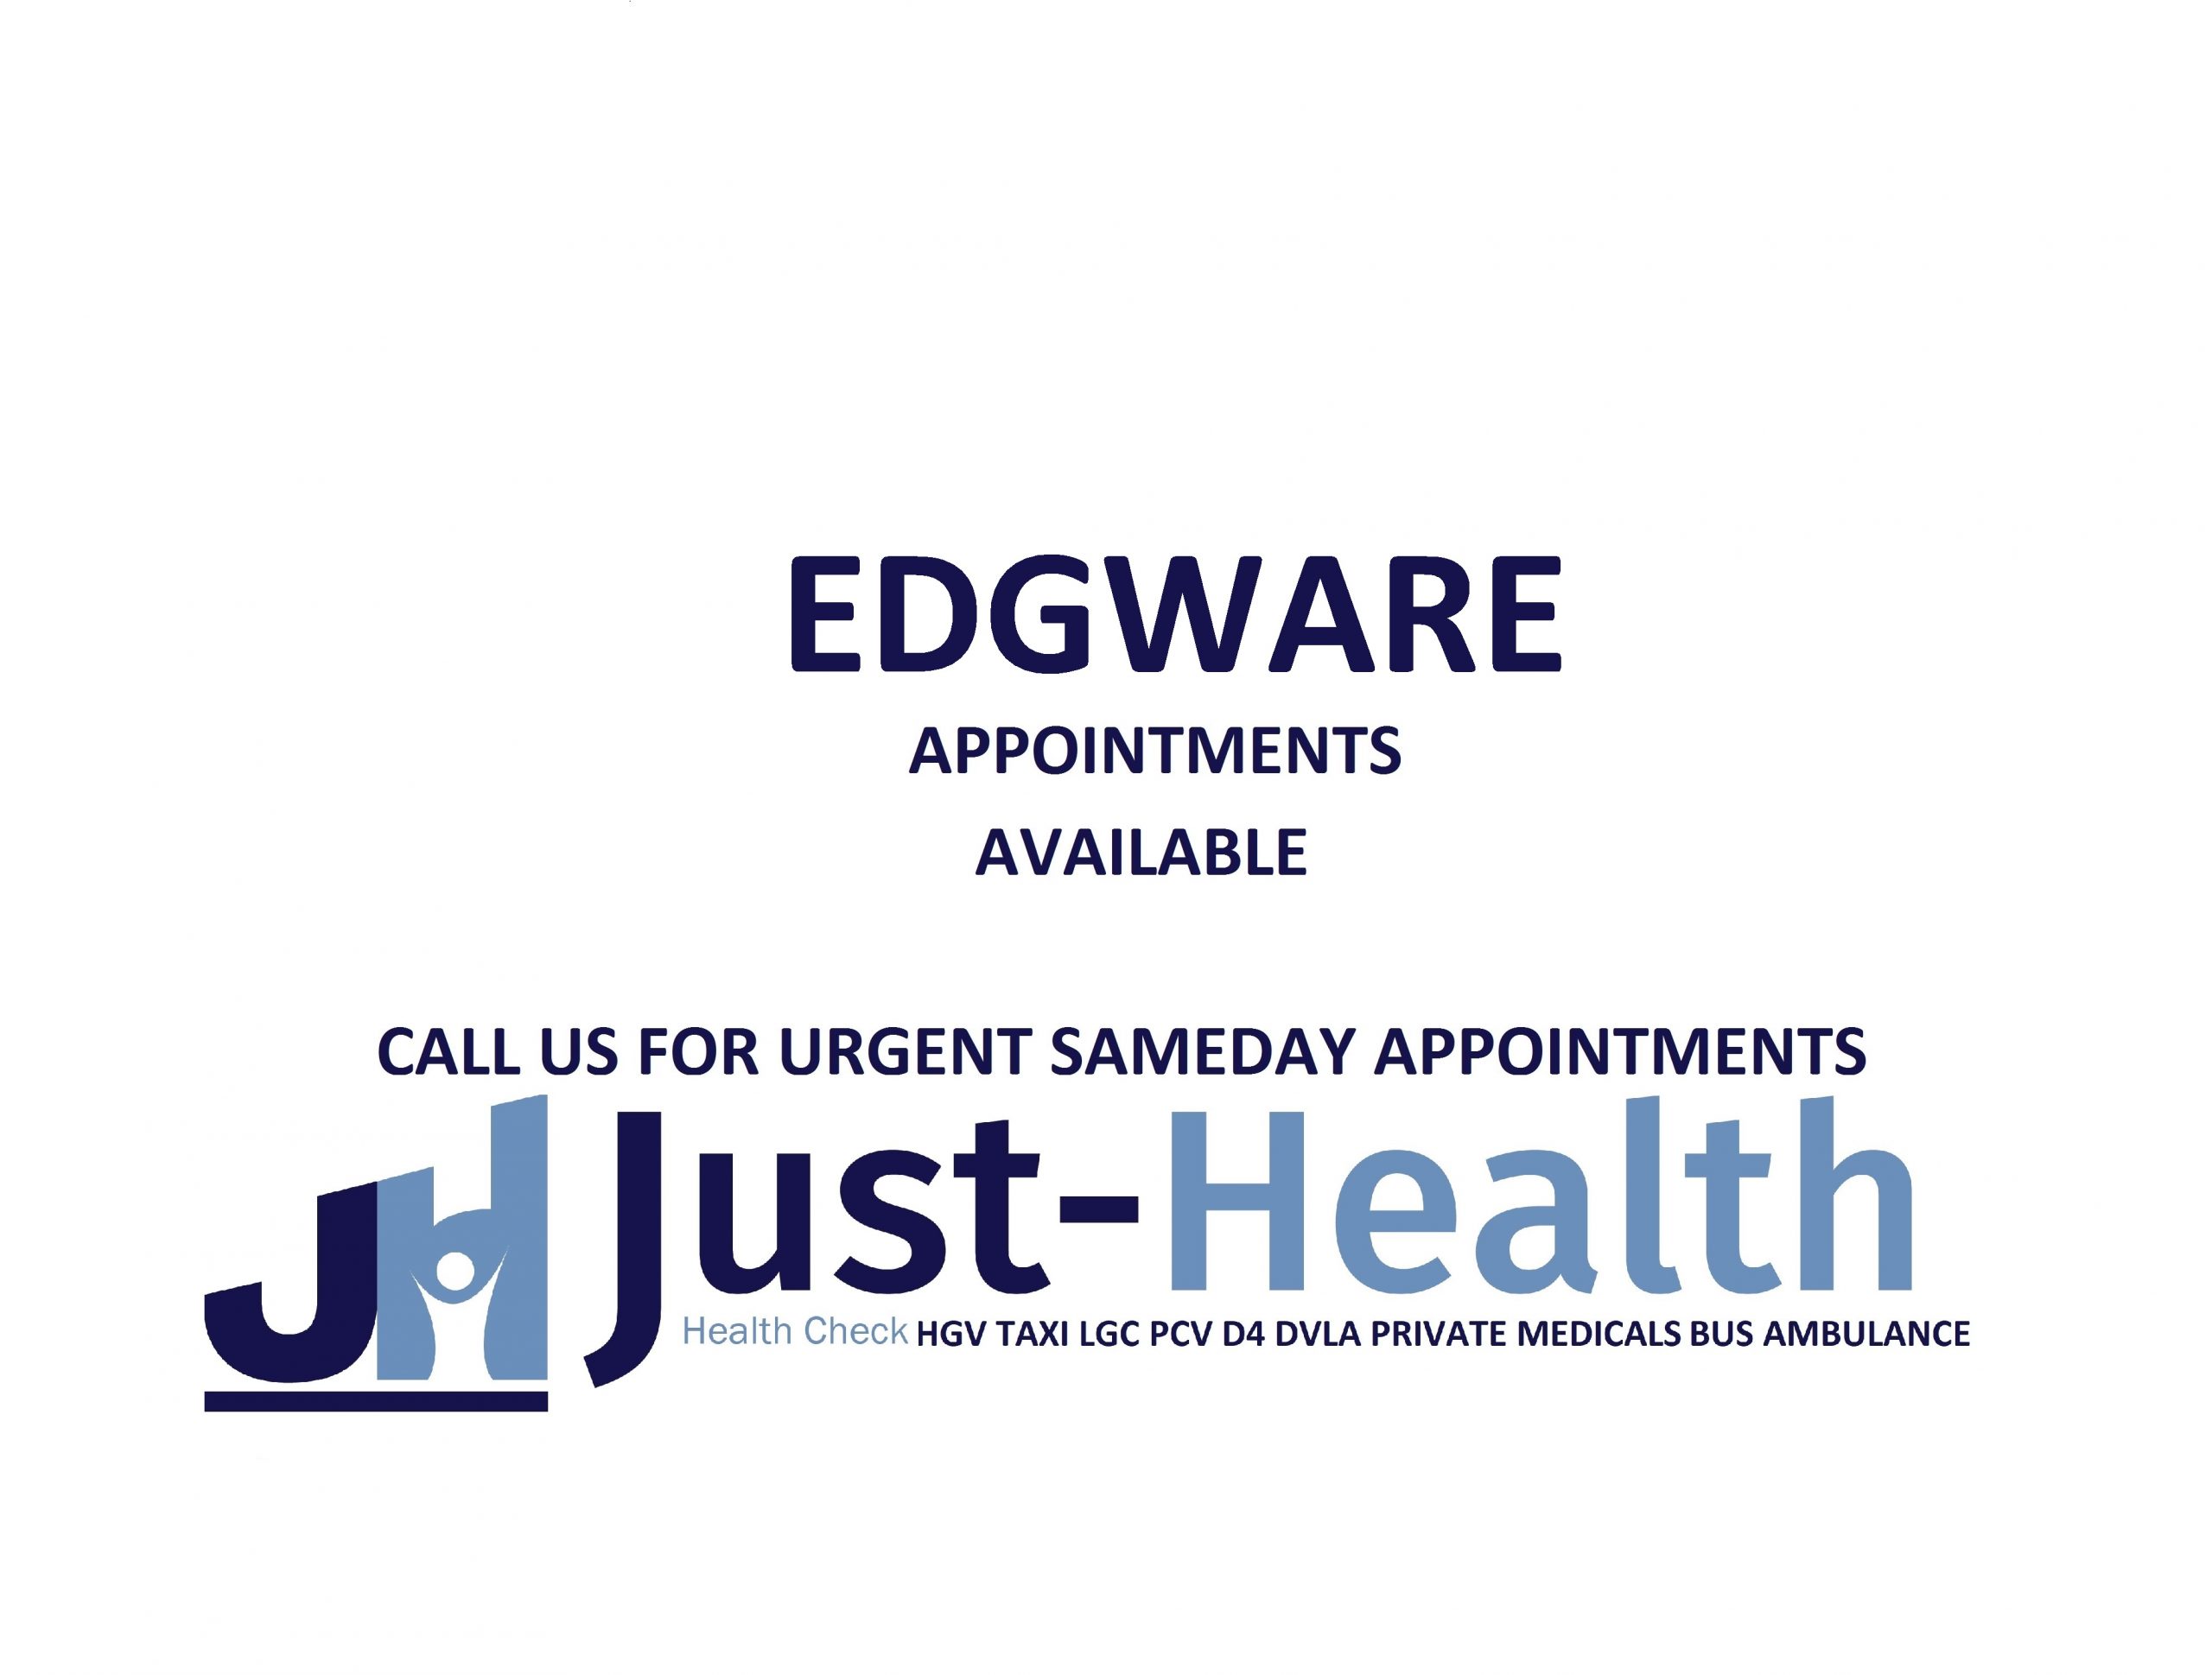 EDGWARE HGV MEDICAL